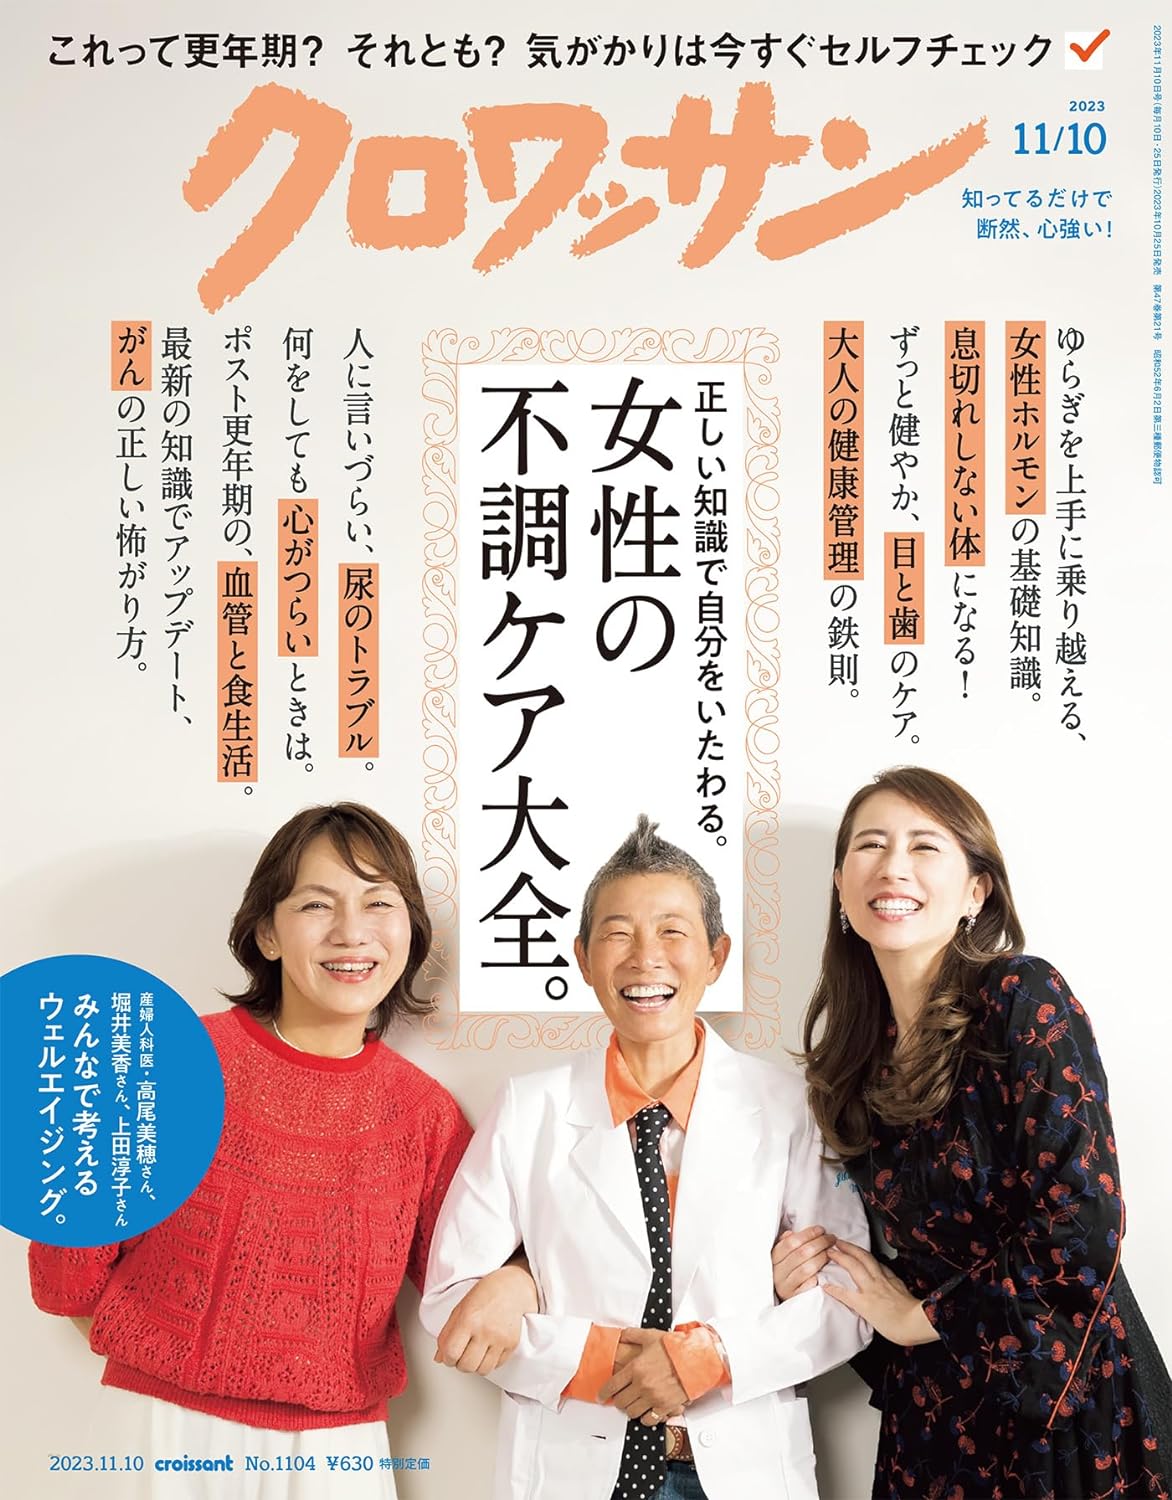 10月25日発売の『クロワッサン』最新号は「女性の不調ケア大全。」